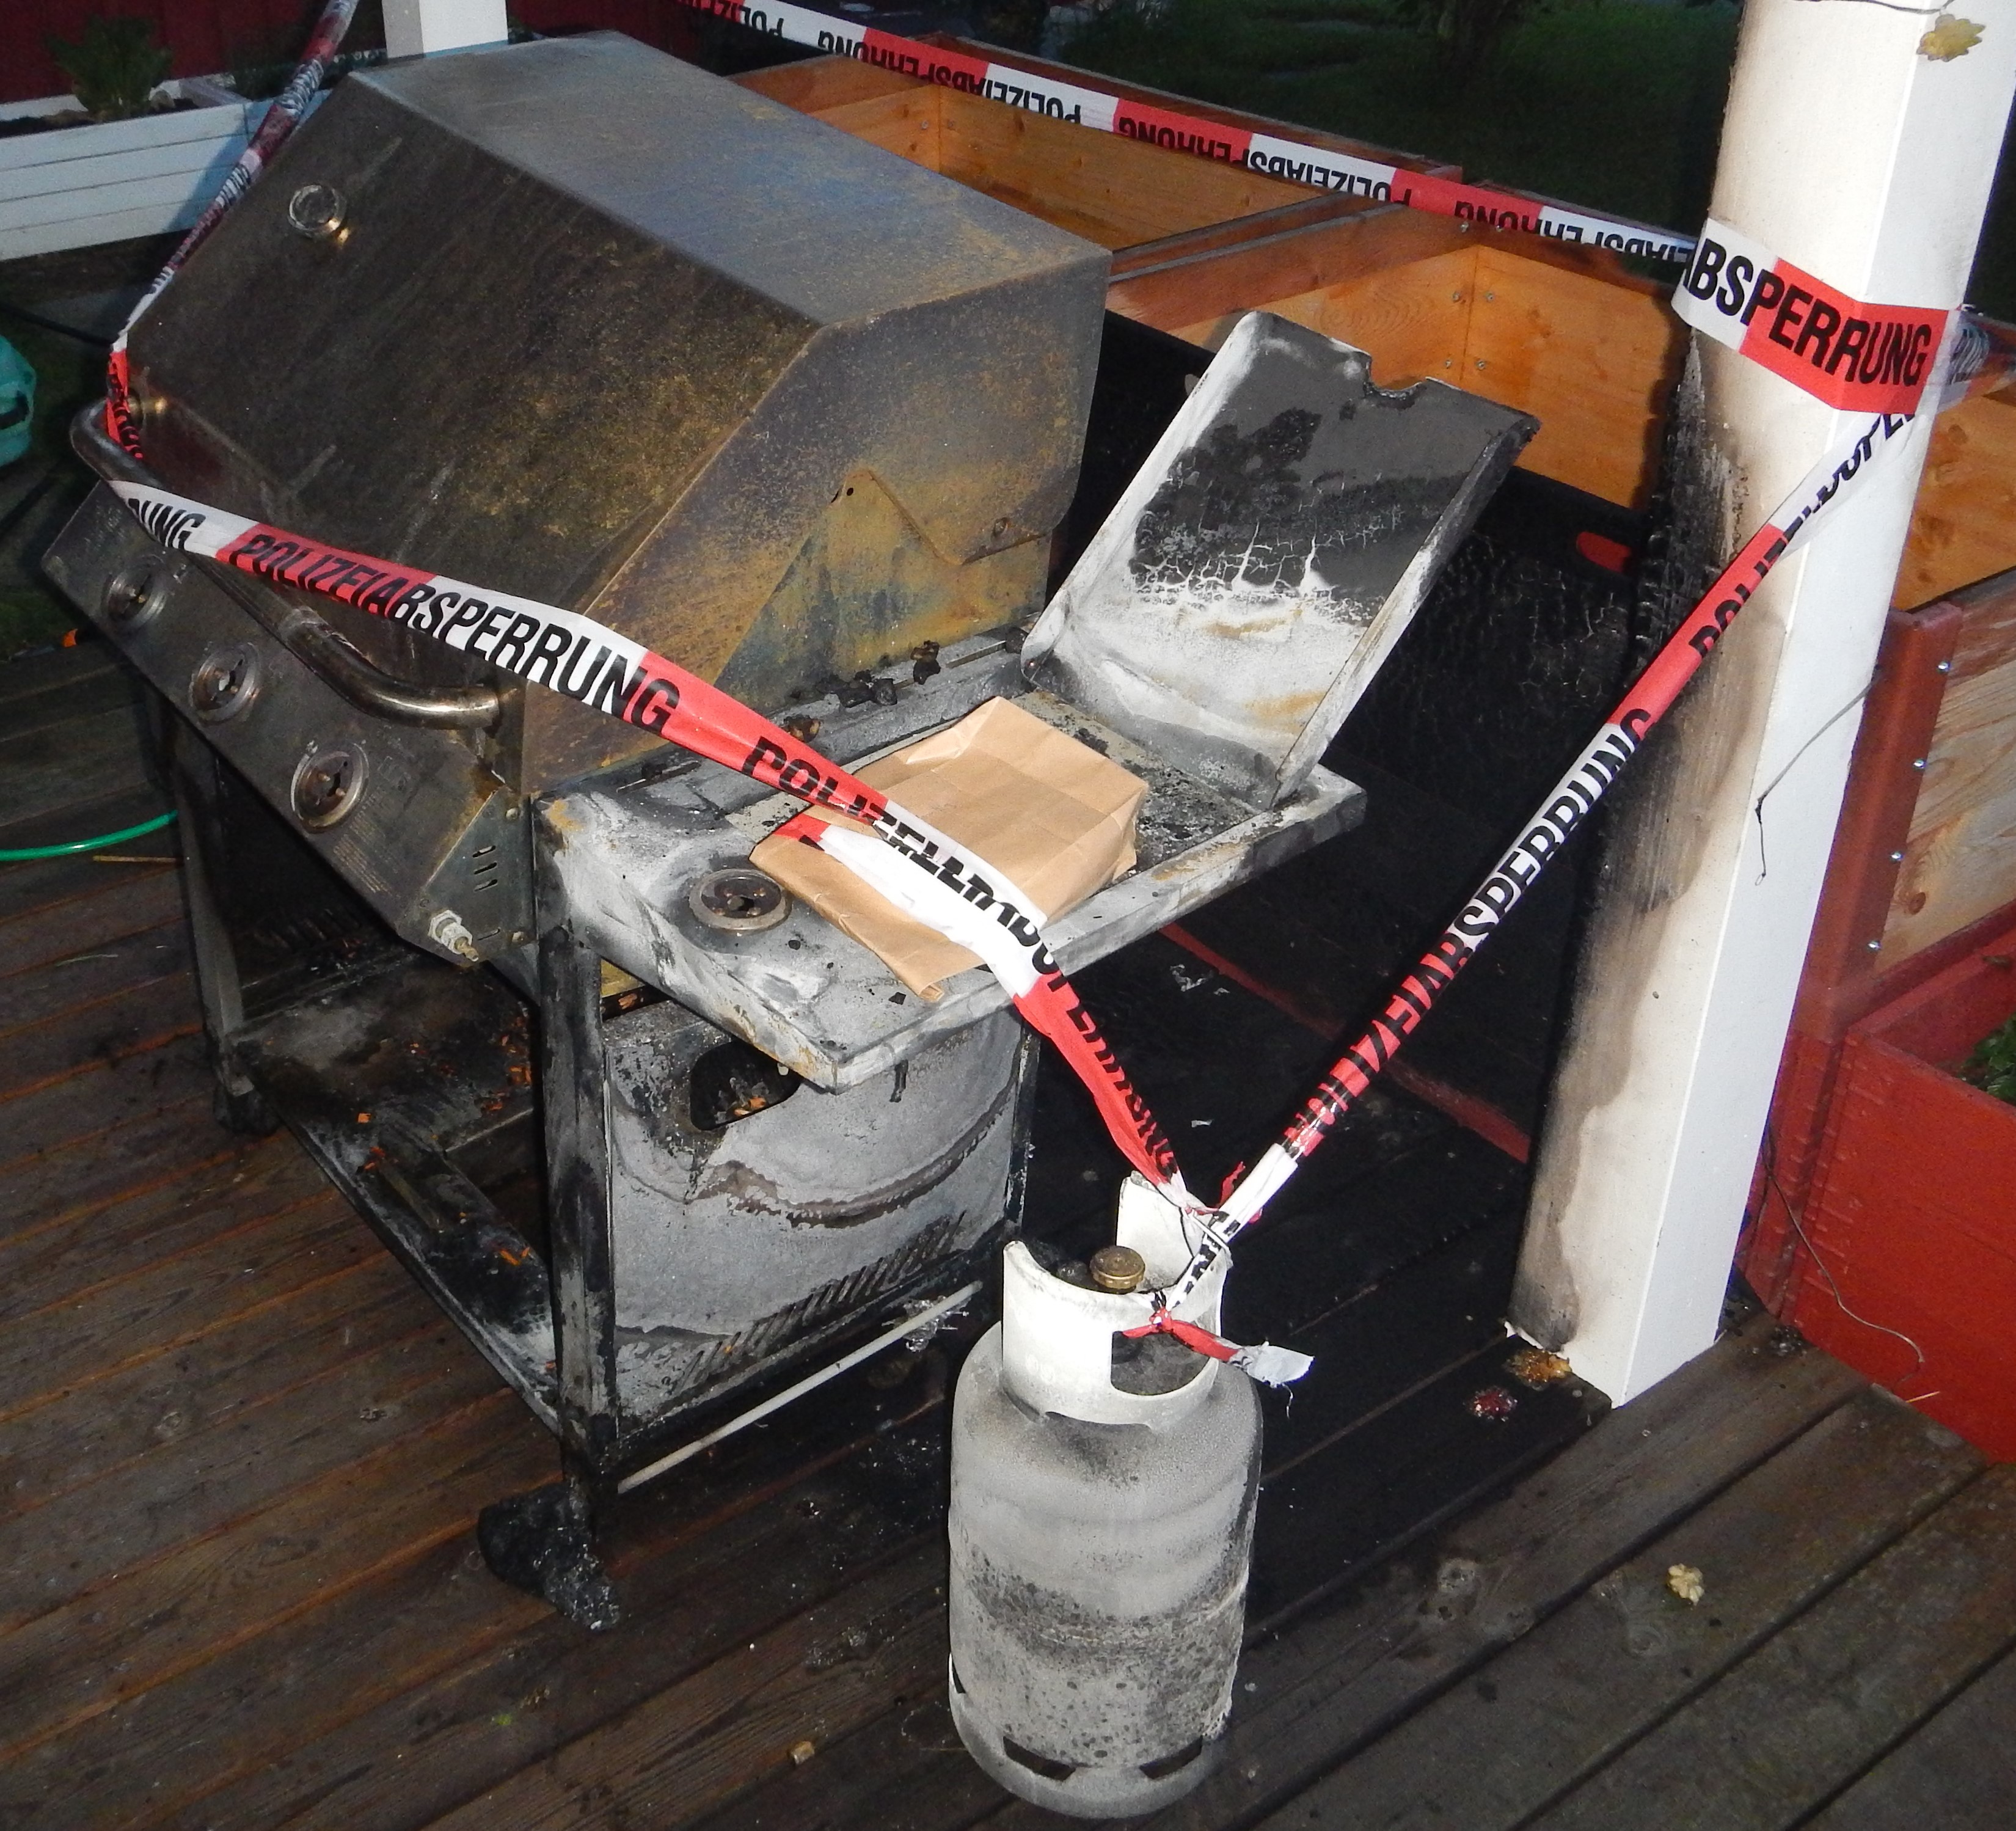 Bildlegende: 	Beim Brand entstand Sachschaden von mehreren tausend Franken. (Bild: Kantonspolizei Thurgau).